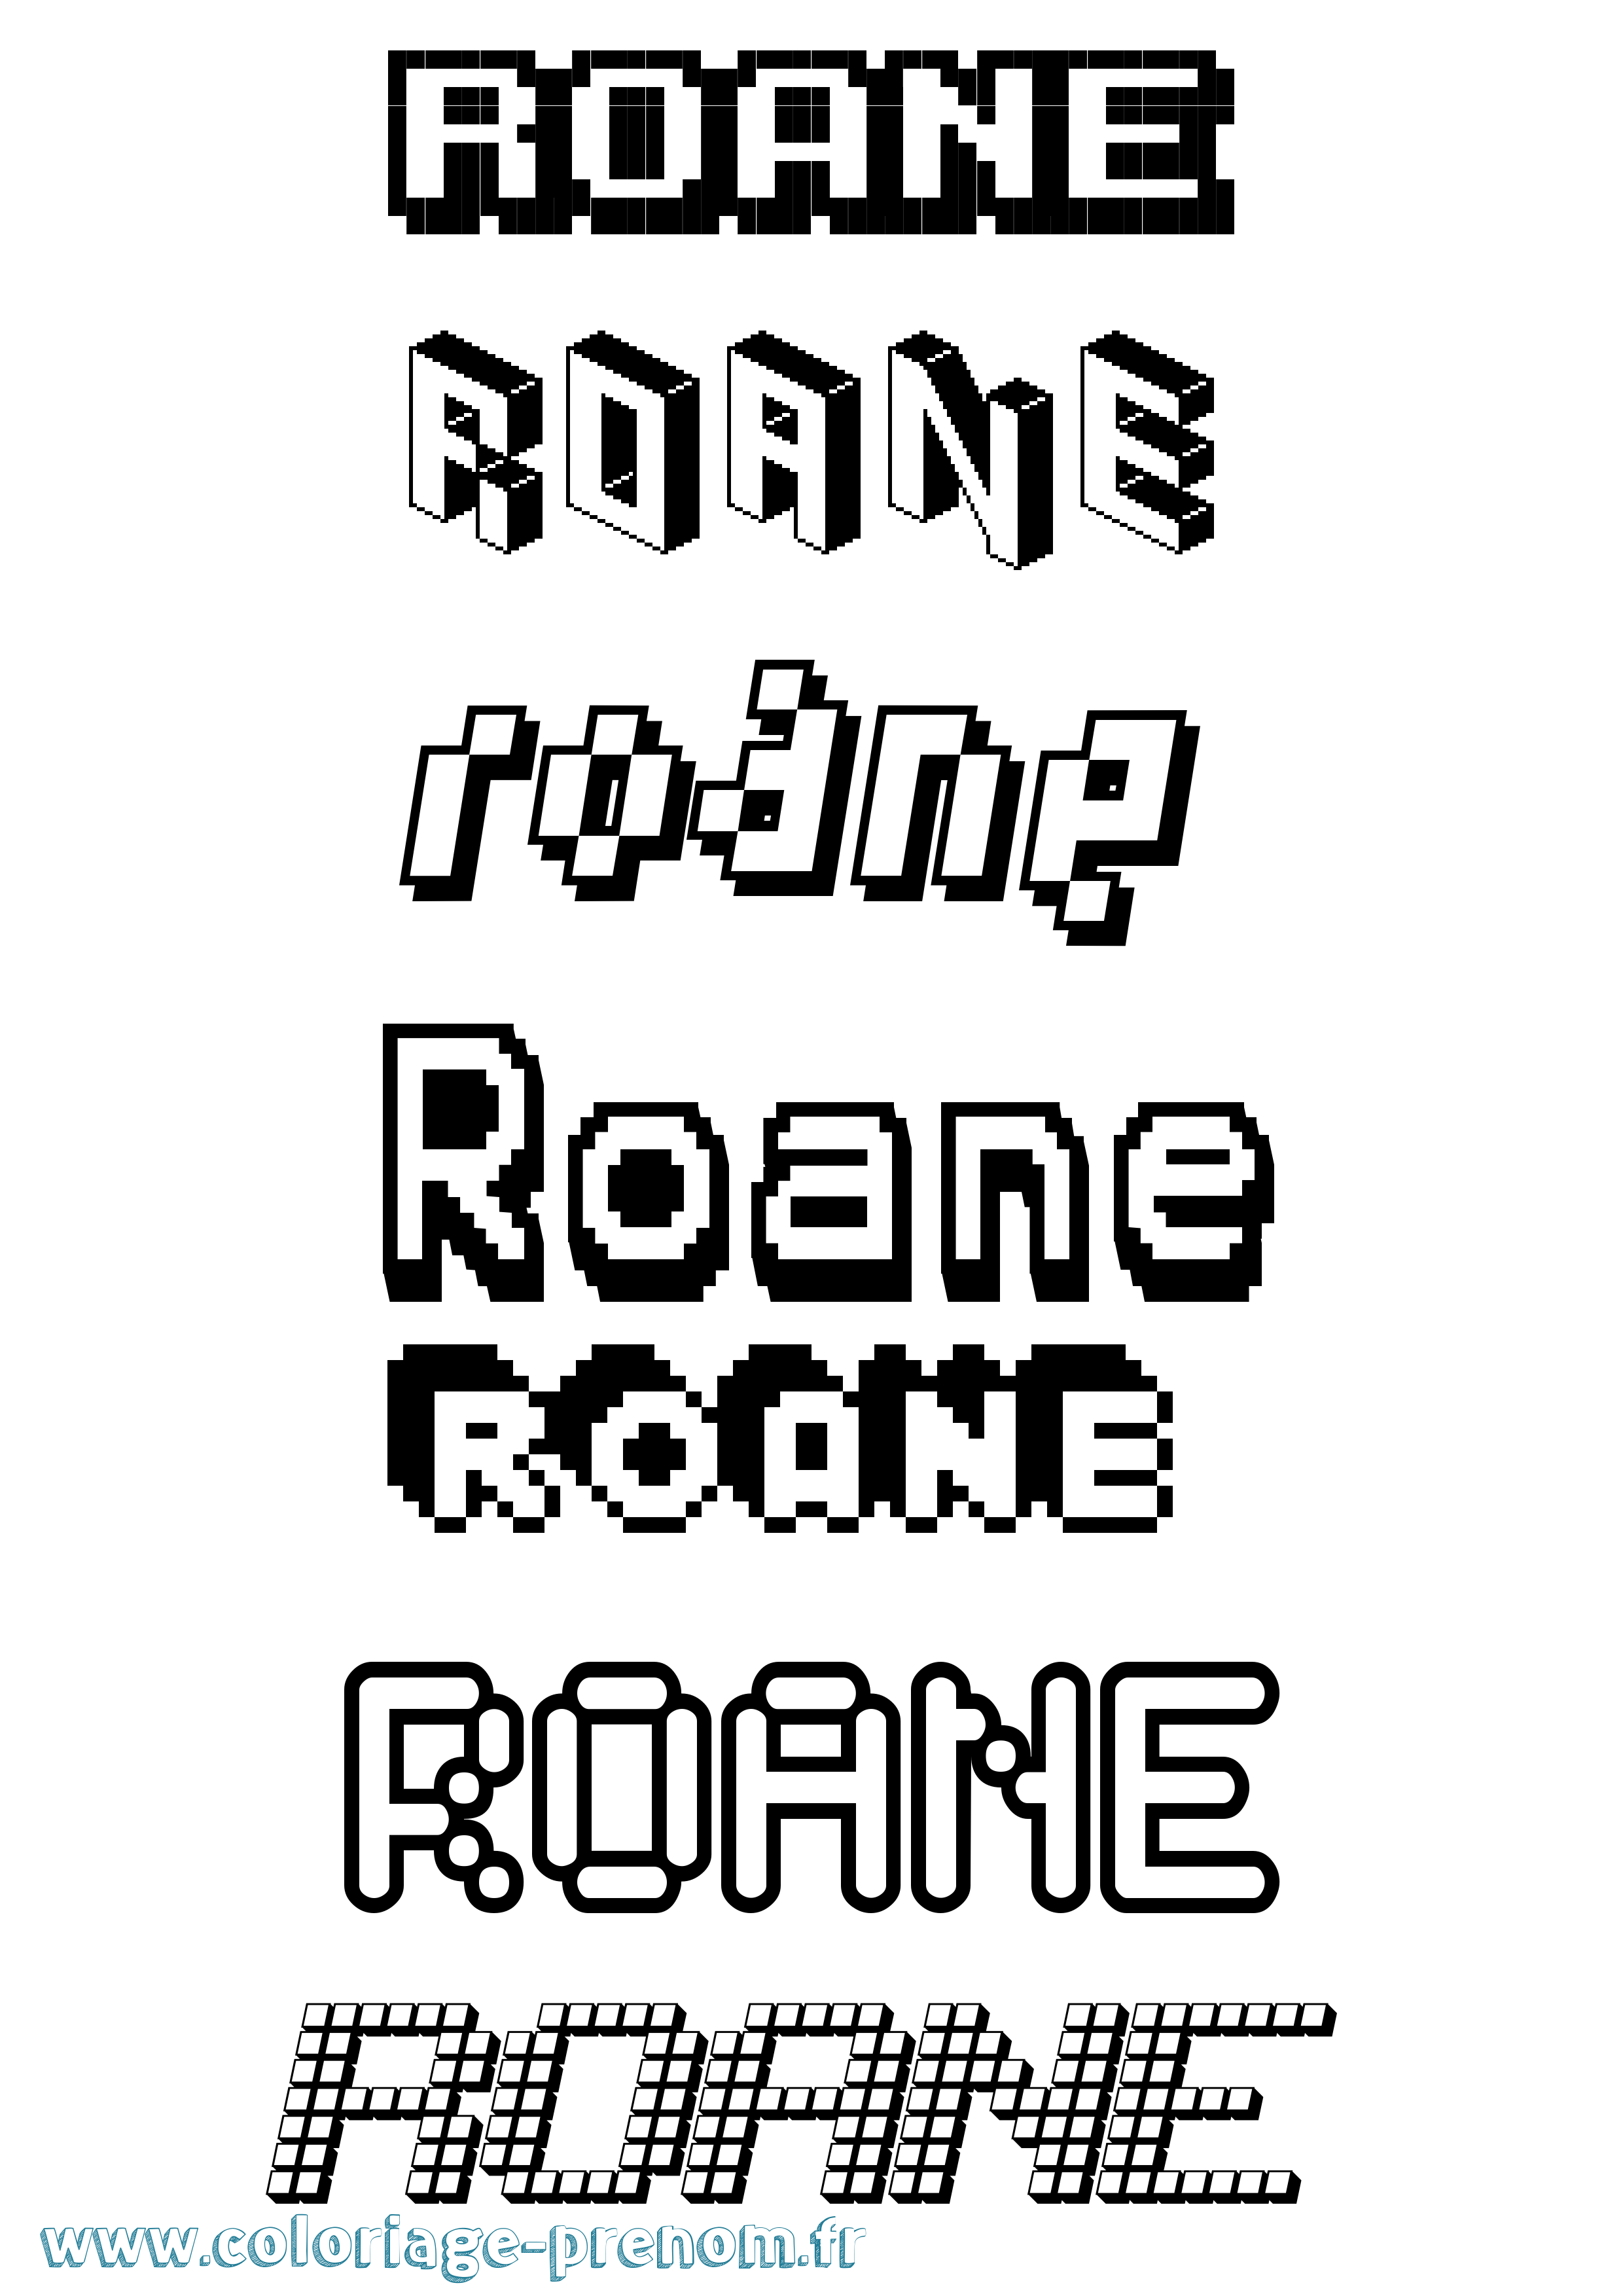 Coloriage prénom Roane Pixel